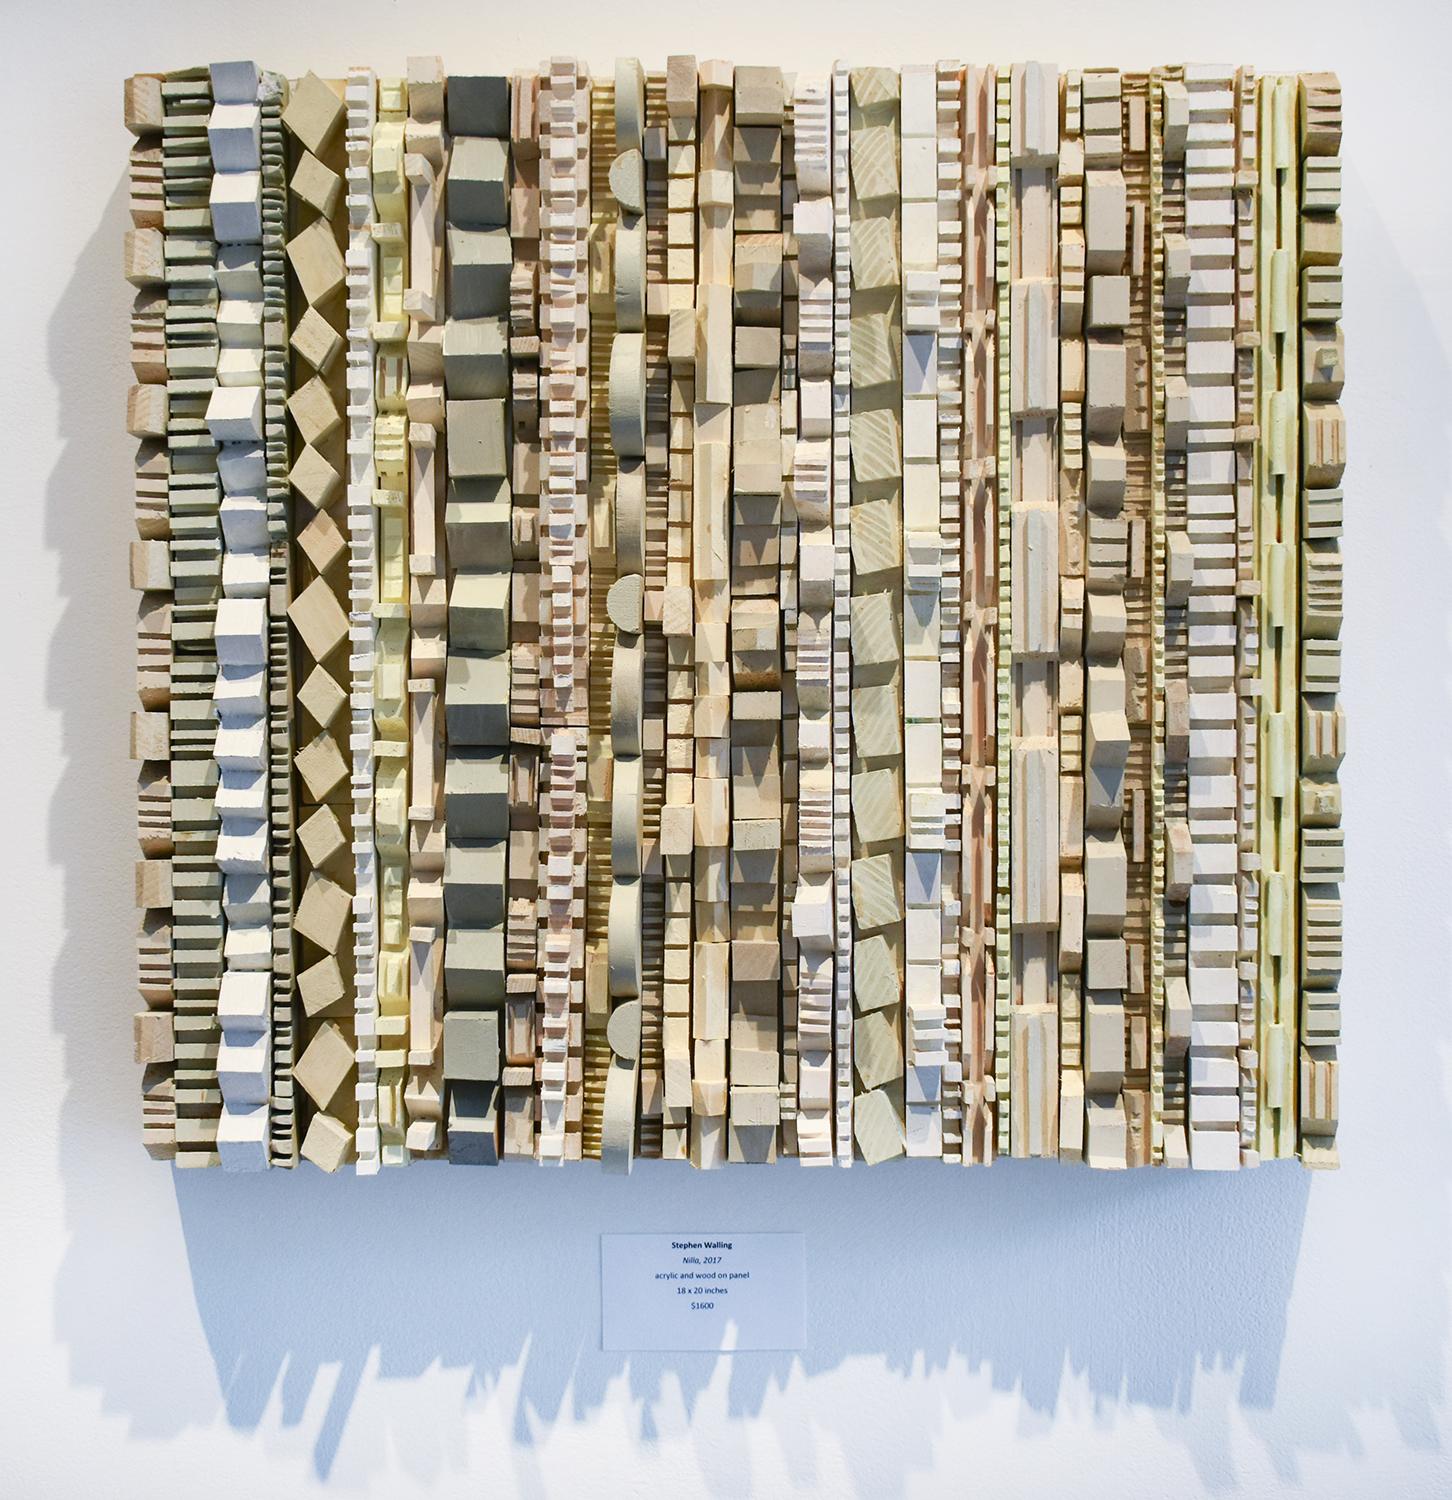 sculpture murale abstraite tridimensionnelle, acrylique et bois sur panneau 
des pièces de bois sculptées peintes dans des tons de blanc, gris et beige avec un accent de vert menthe.
18 x 20 x 2.5 pouces, peut être orienté verticalement ou